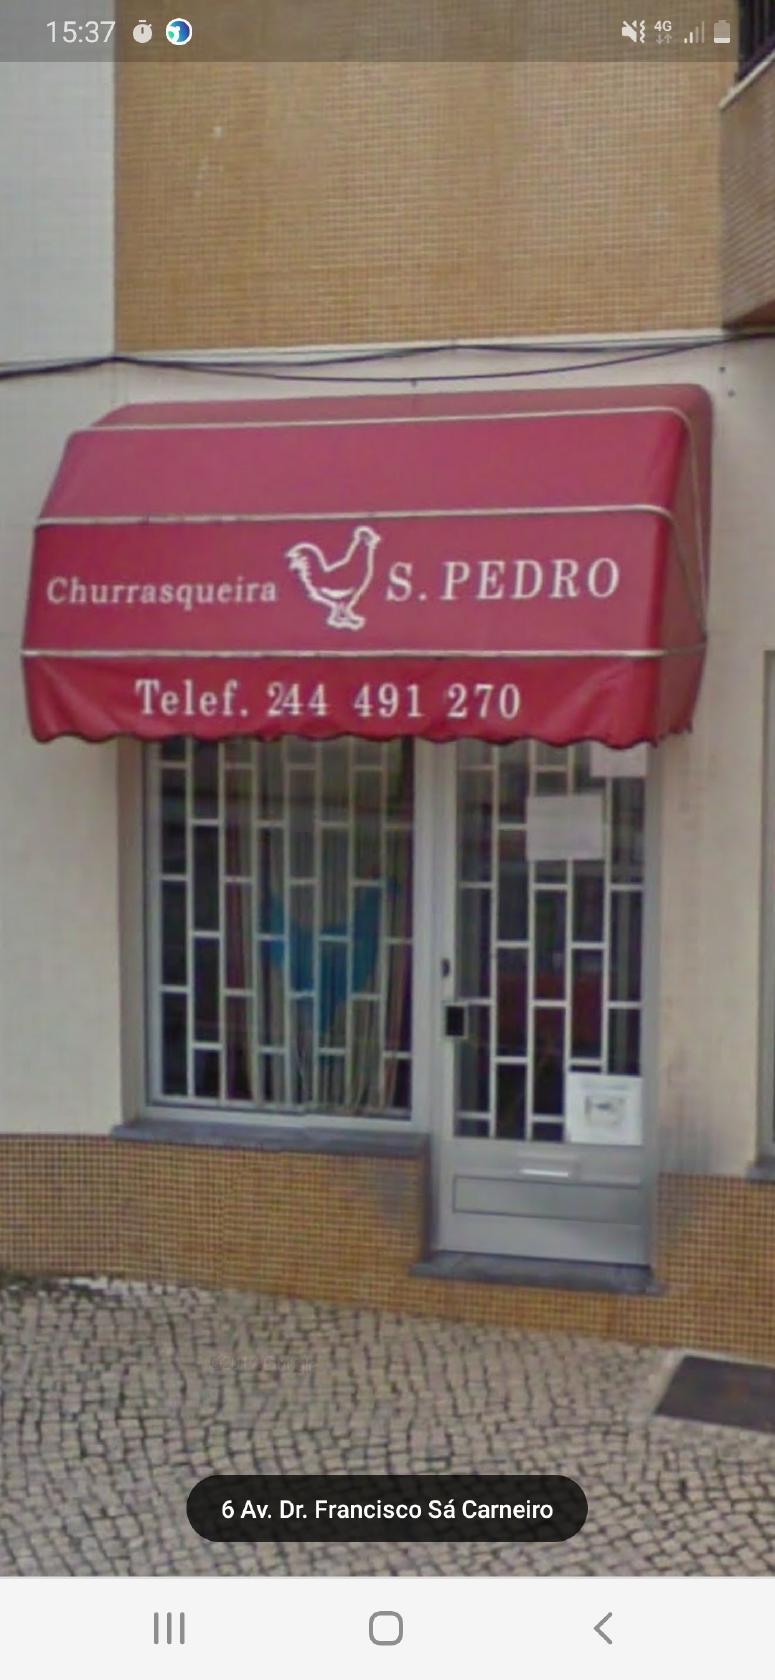 Churrasqueira S. Pedro